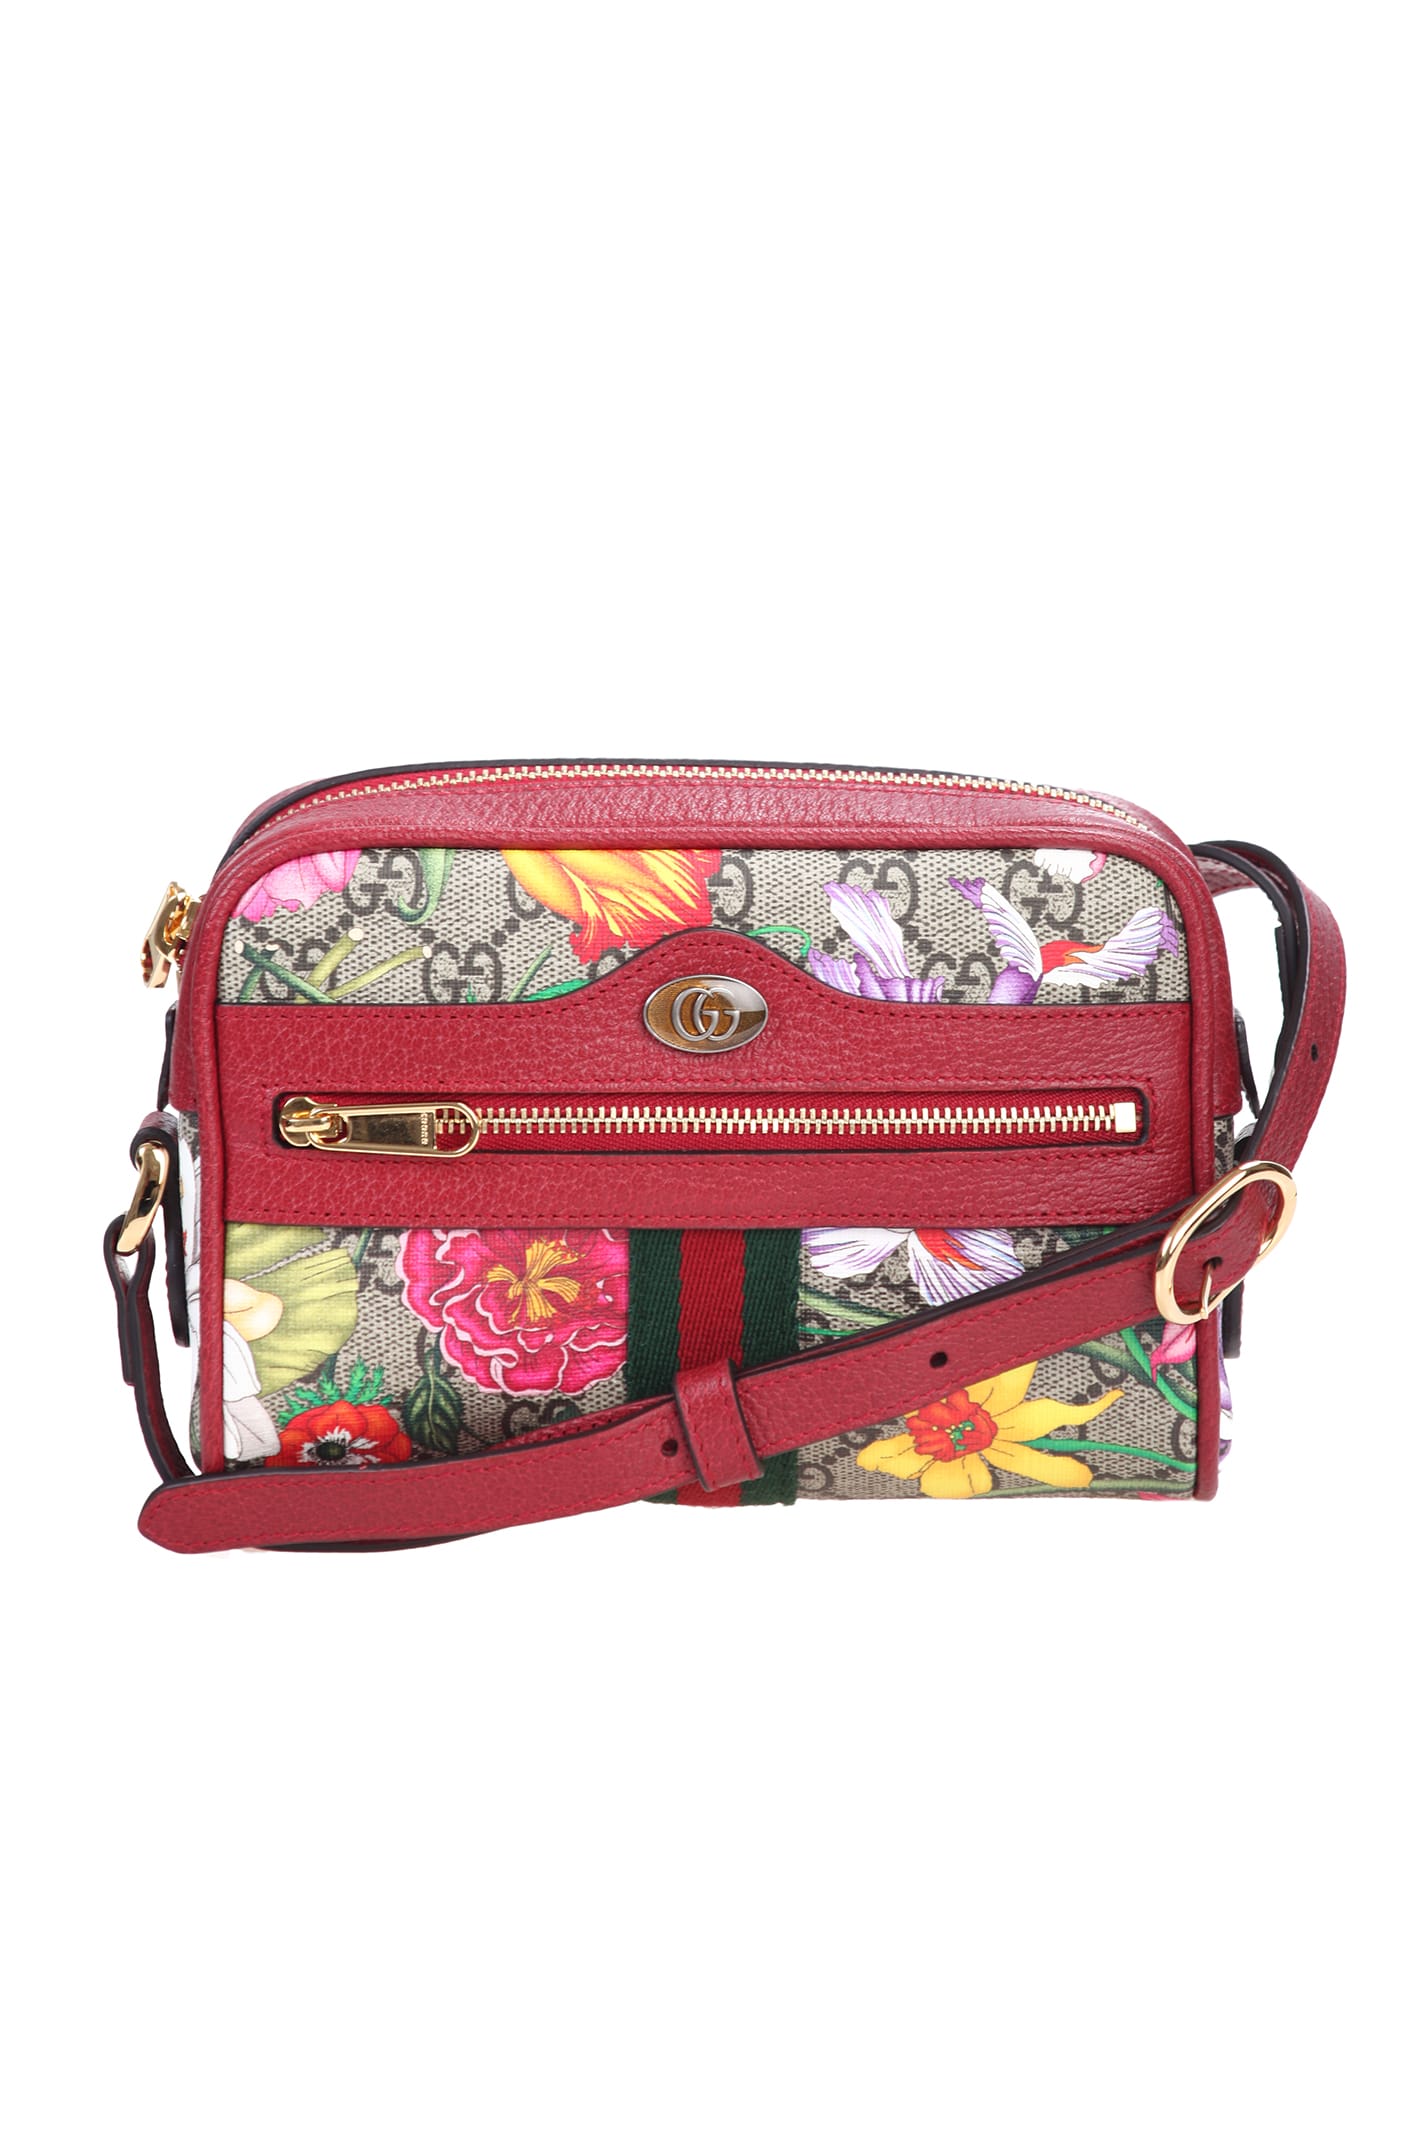 Gucci Mini Ophidia Bag In Rosso